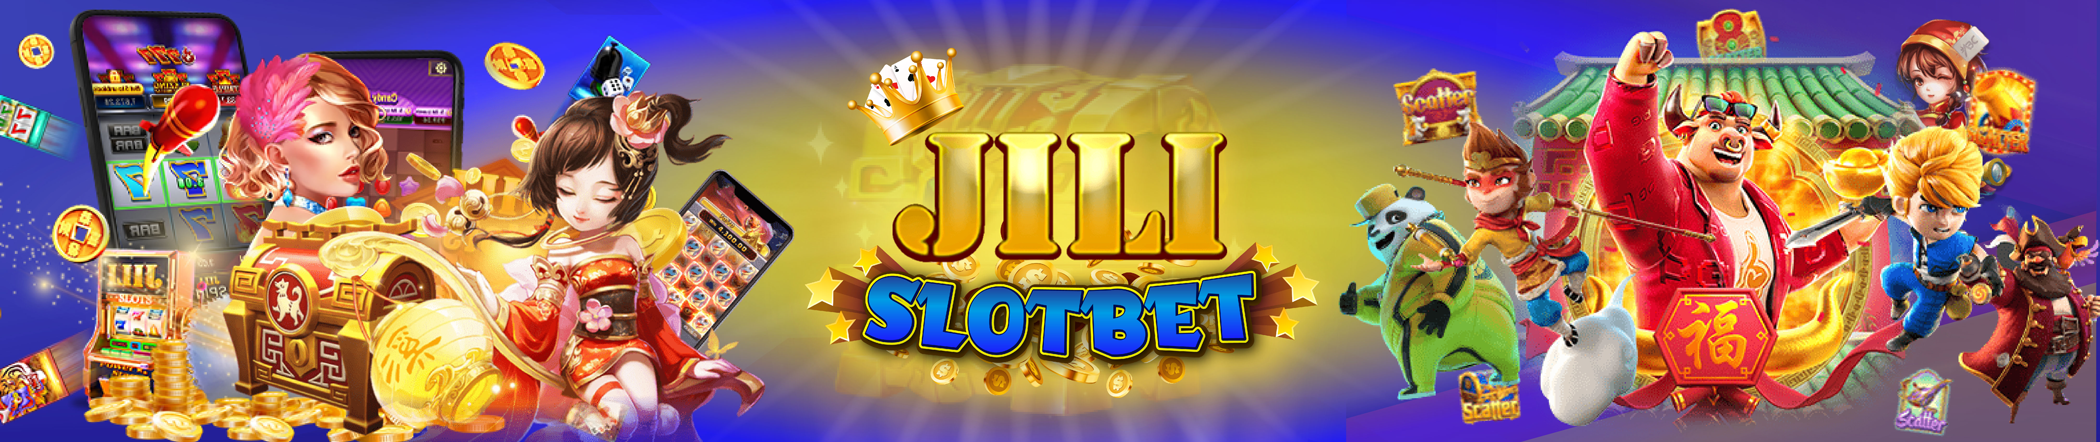 Jili Slot เล่นผ่านเว็บ มือถือ สล็อตวอเลท ครบวงจร เว็บสล็อต ค่าย jili โปรโมชั่น เครติดฟรี ล่าสุด